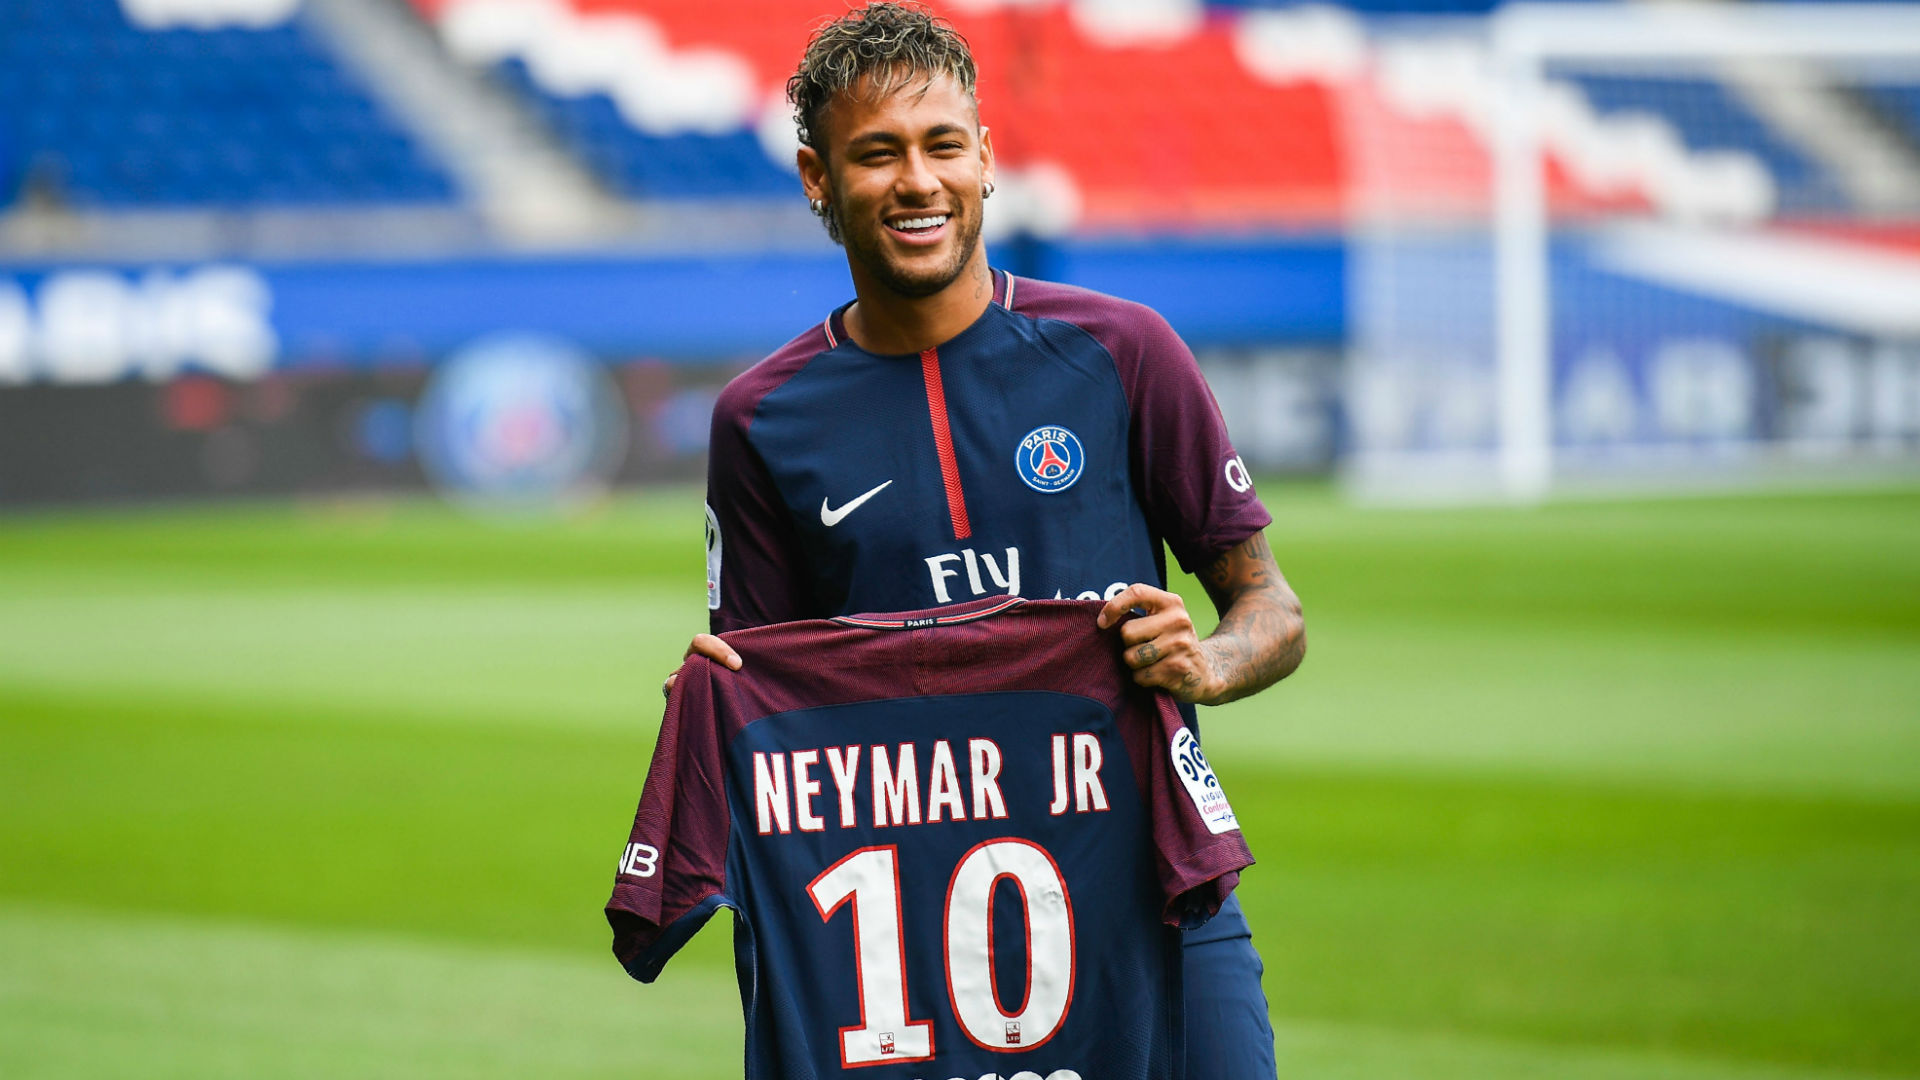 Kỹ thuật bóng đá của Neymar